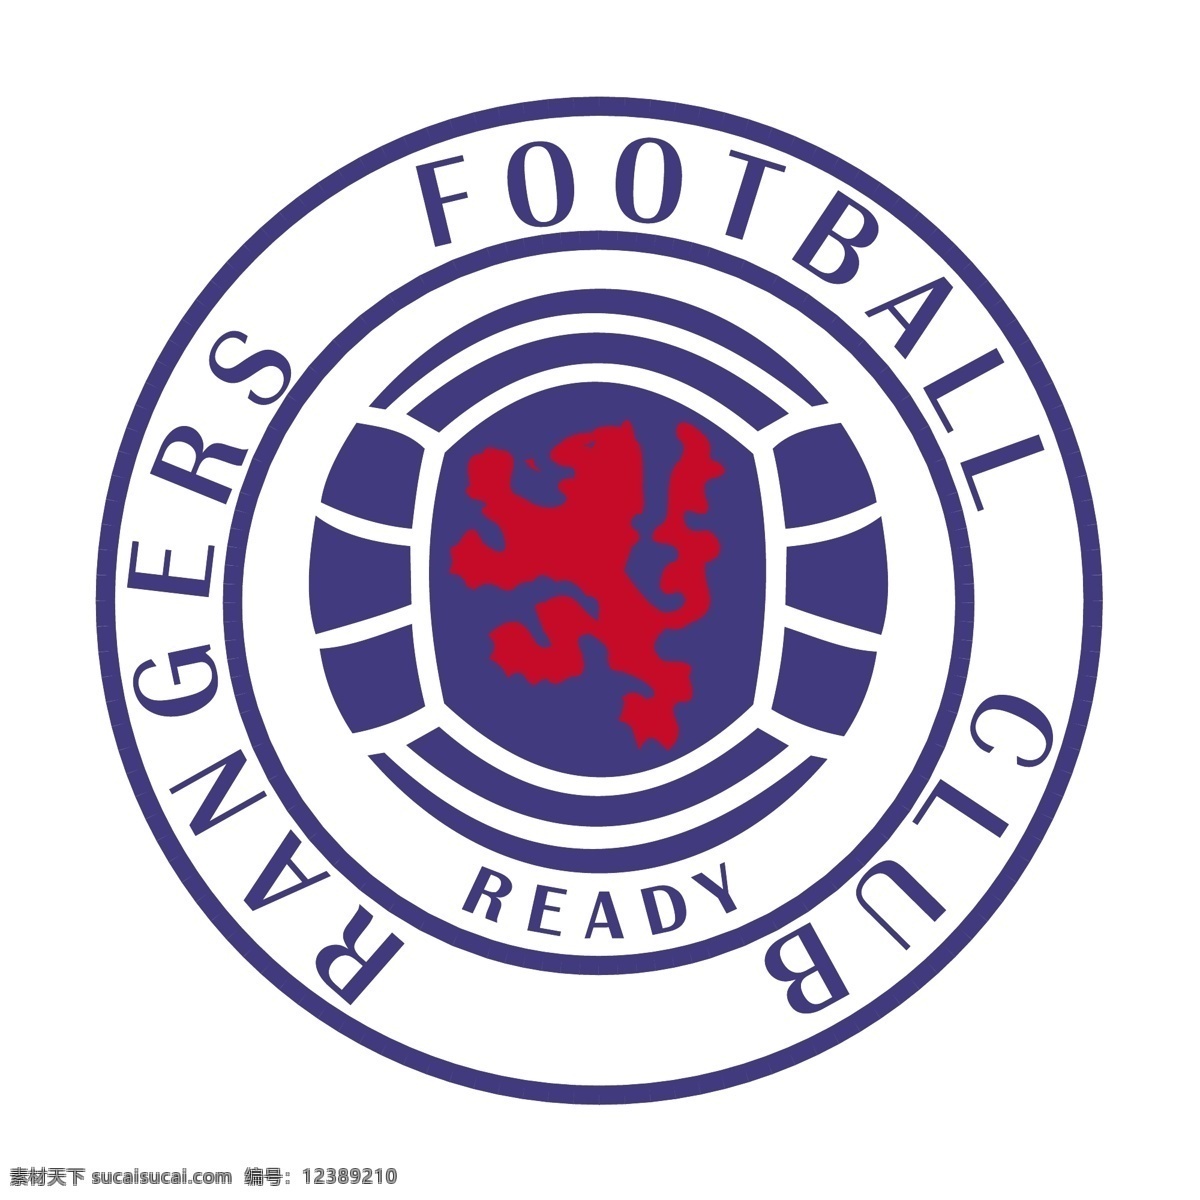 流浪者 足球 俱乐部 自由 标志 标识 psd源文件 logo设计